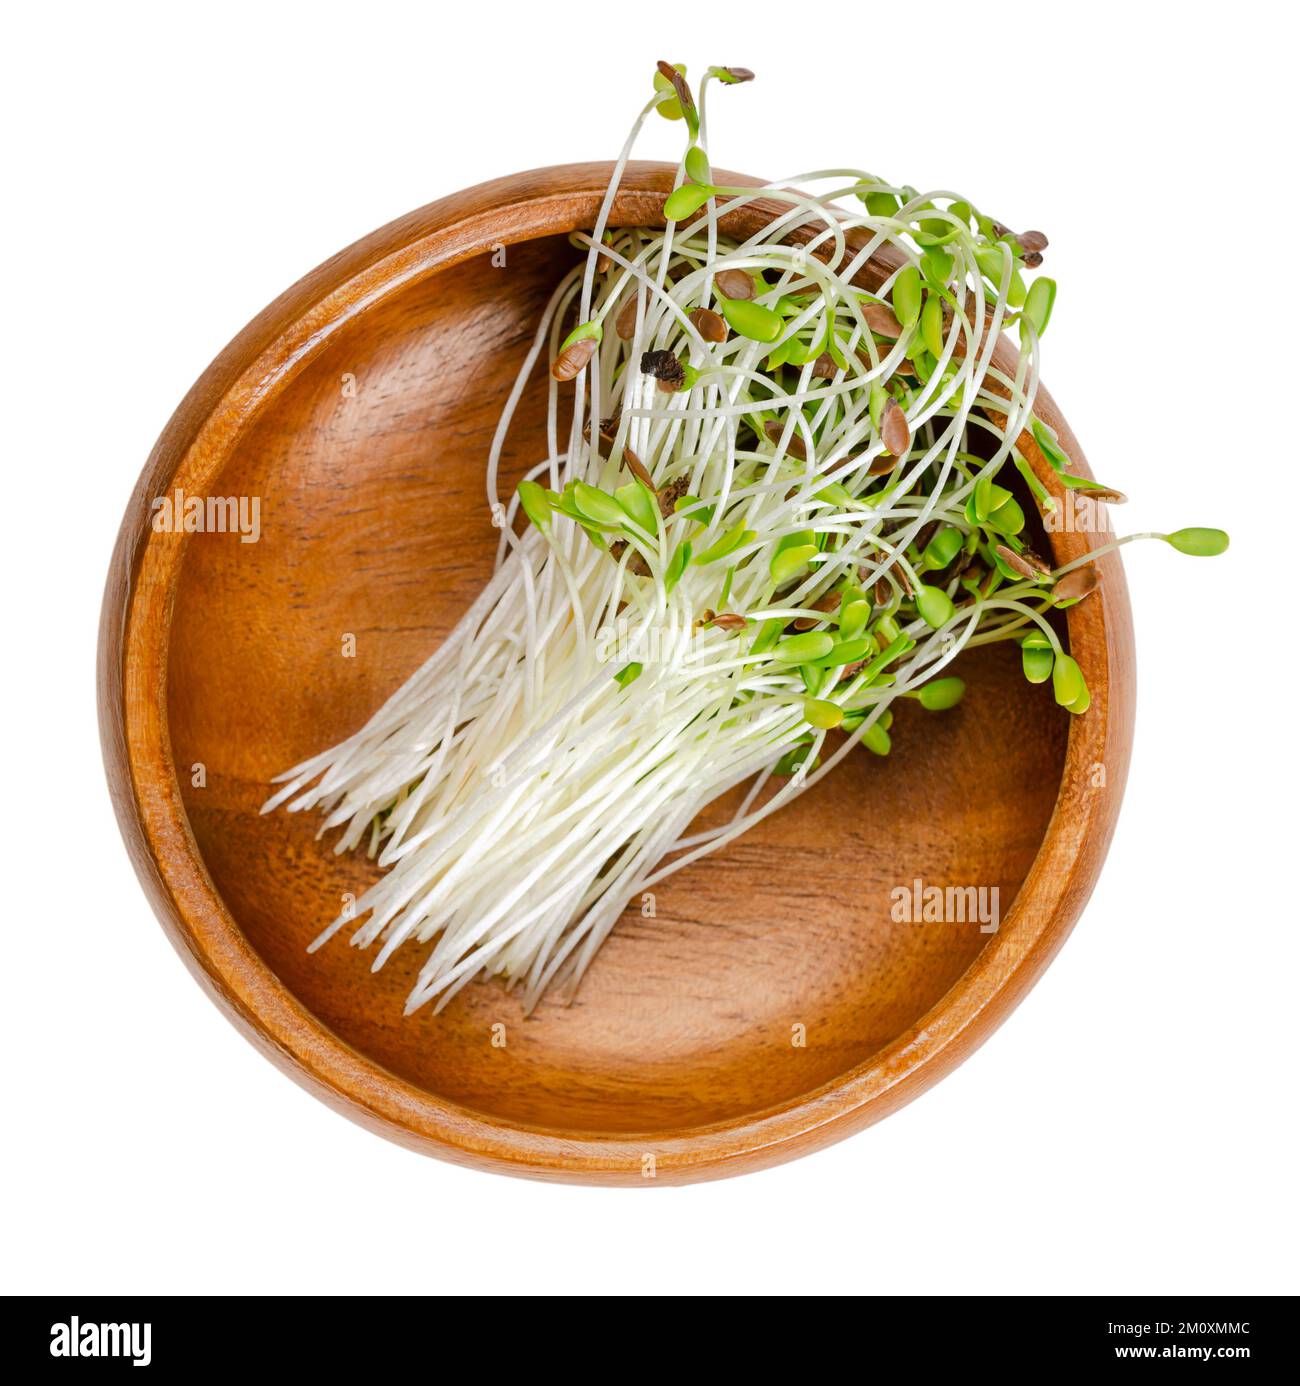 Gewöhnlicher Flachs, Mikrogrün in einer Holzschüssel. Frische, rohe, verzehrfertige und grüne Sämlinge von Leinsamen, teilweise noch mit den Samenschichten an den Spitzen. Stockfoto